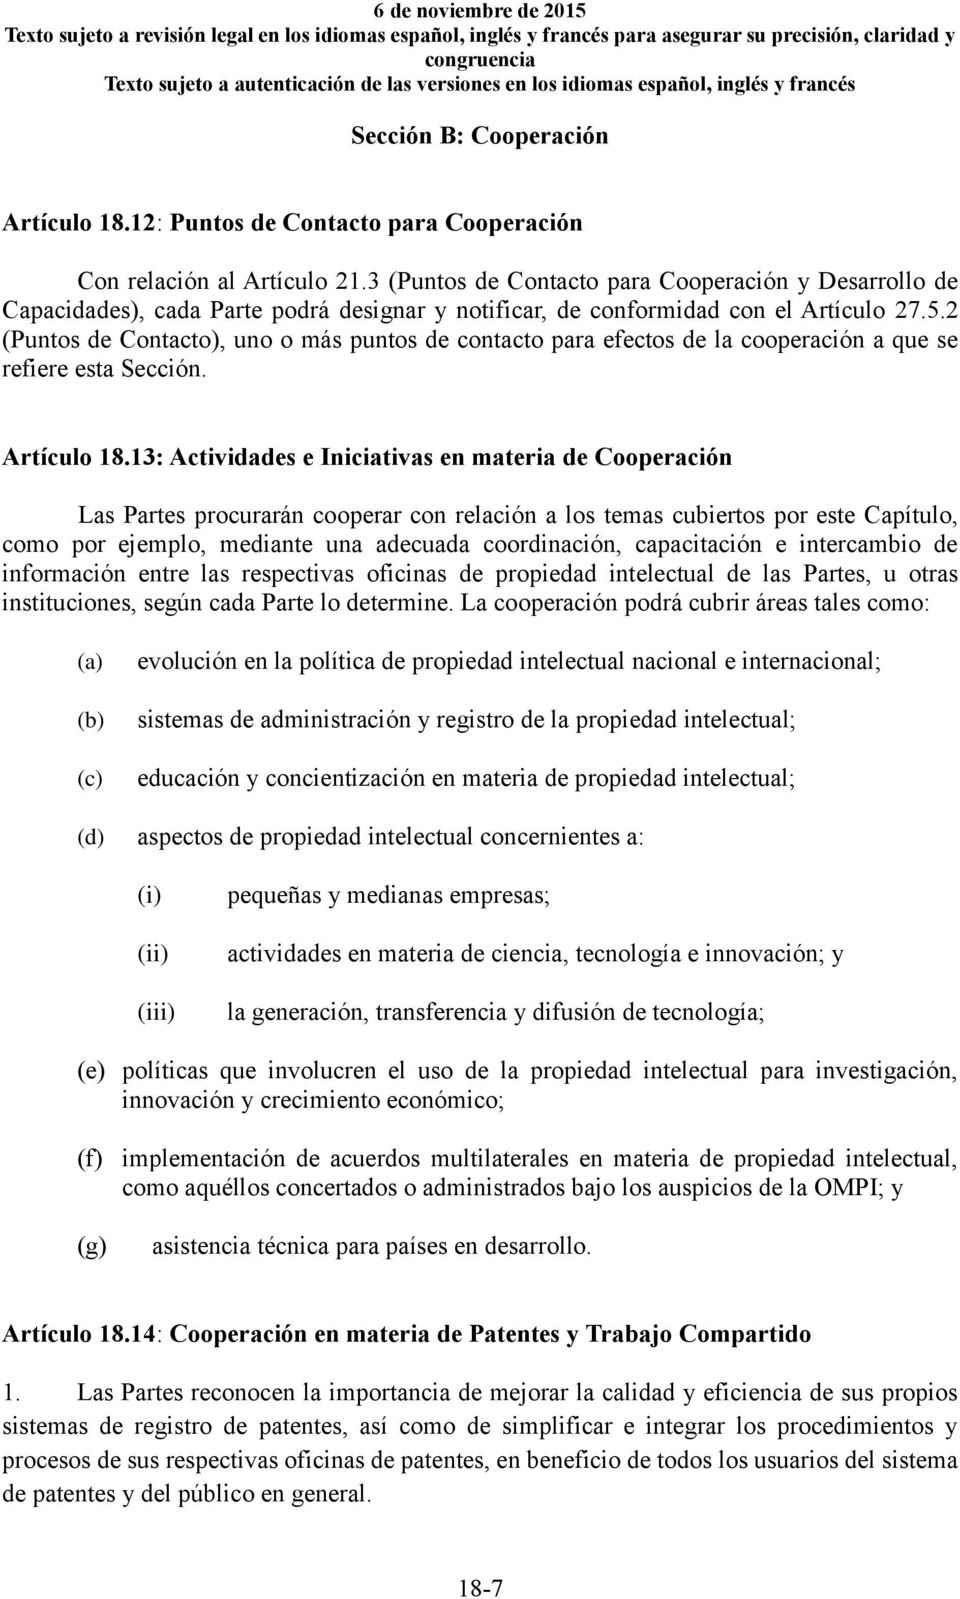 2 (Puntos de Contacto), uno o más puntos de contacto para efectos de la cooperación a que se refiere esta Sección. Artículo 18.